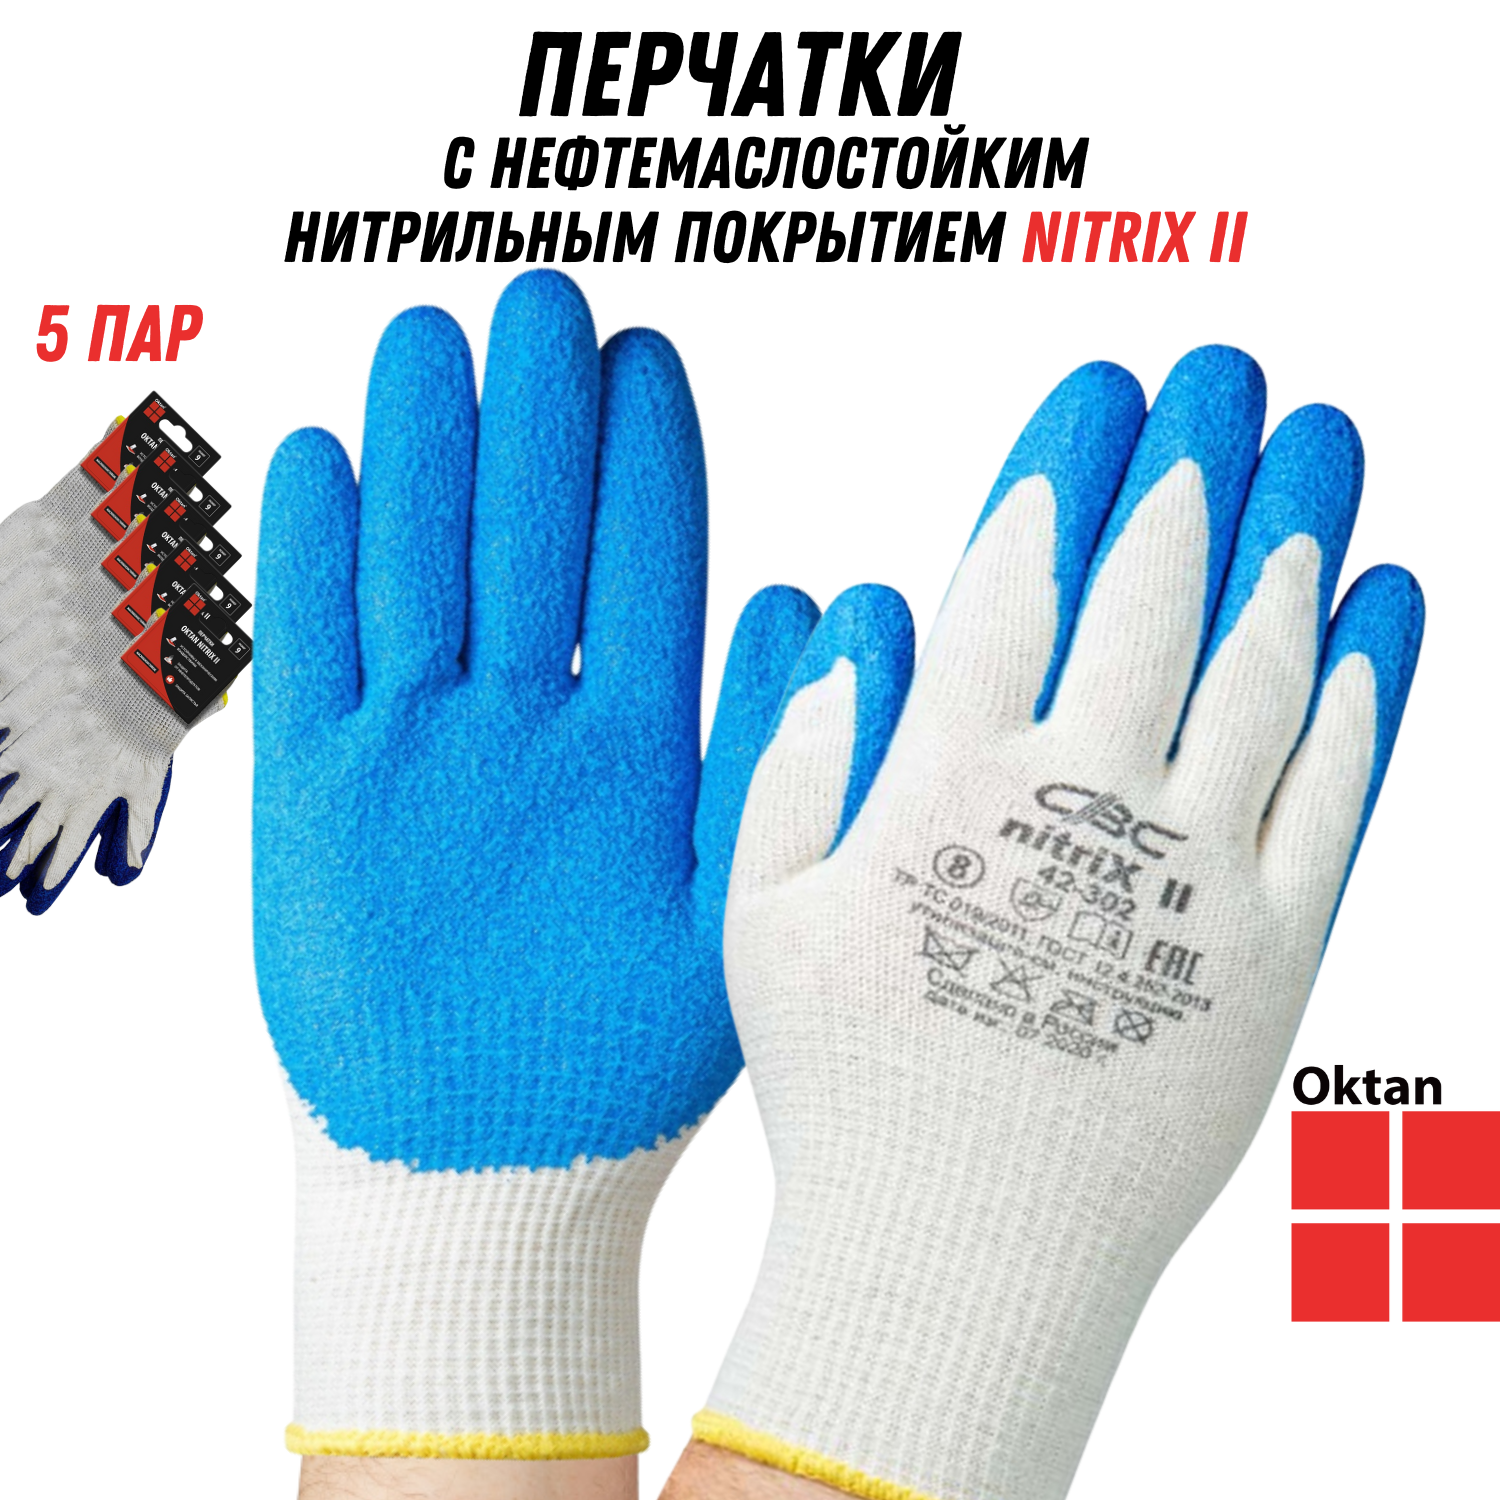 Перчатки рабочие Oktan NITRIX II А5-01-21-05-ММ белые с синим размер 9, 5 пар комплект садовой мебели lf серый с синим из 4 х предметов